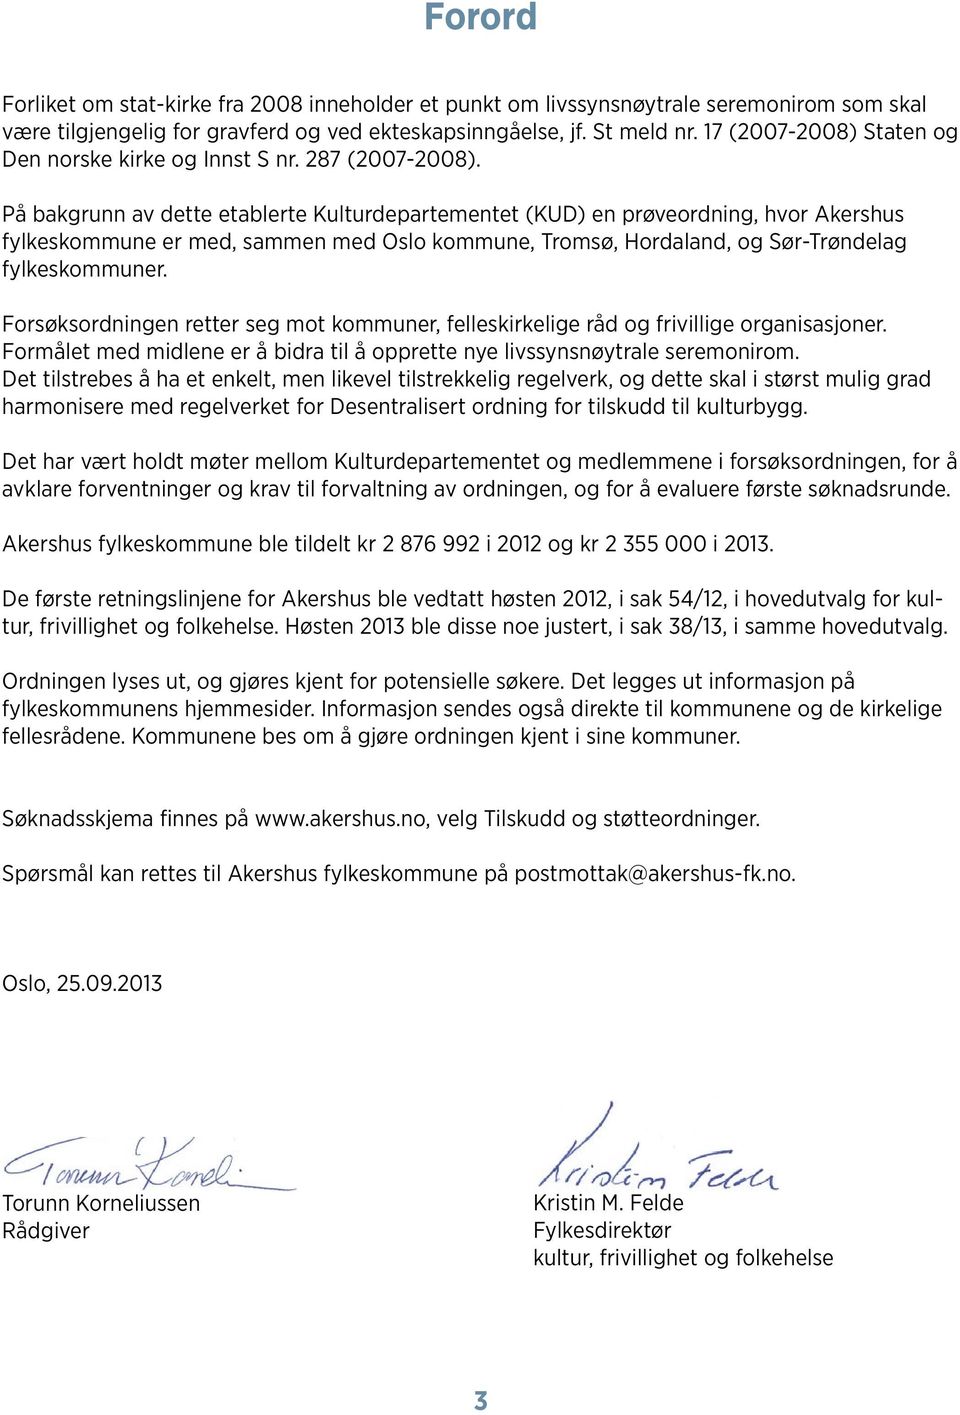 På bakgrunn av dette etablerte Kulturdepartementet (KUD) en prøveordning, hvor Akershus fylkeskommune er med, sammen med Oslo kommune, Tromsø, Hordaland, og Sør-Trøndelag fylkeskommuner.